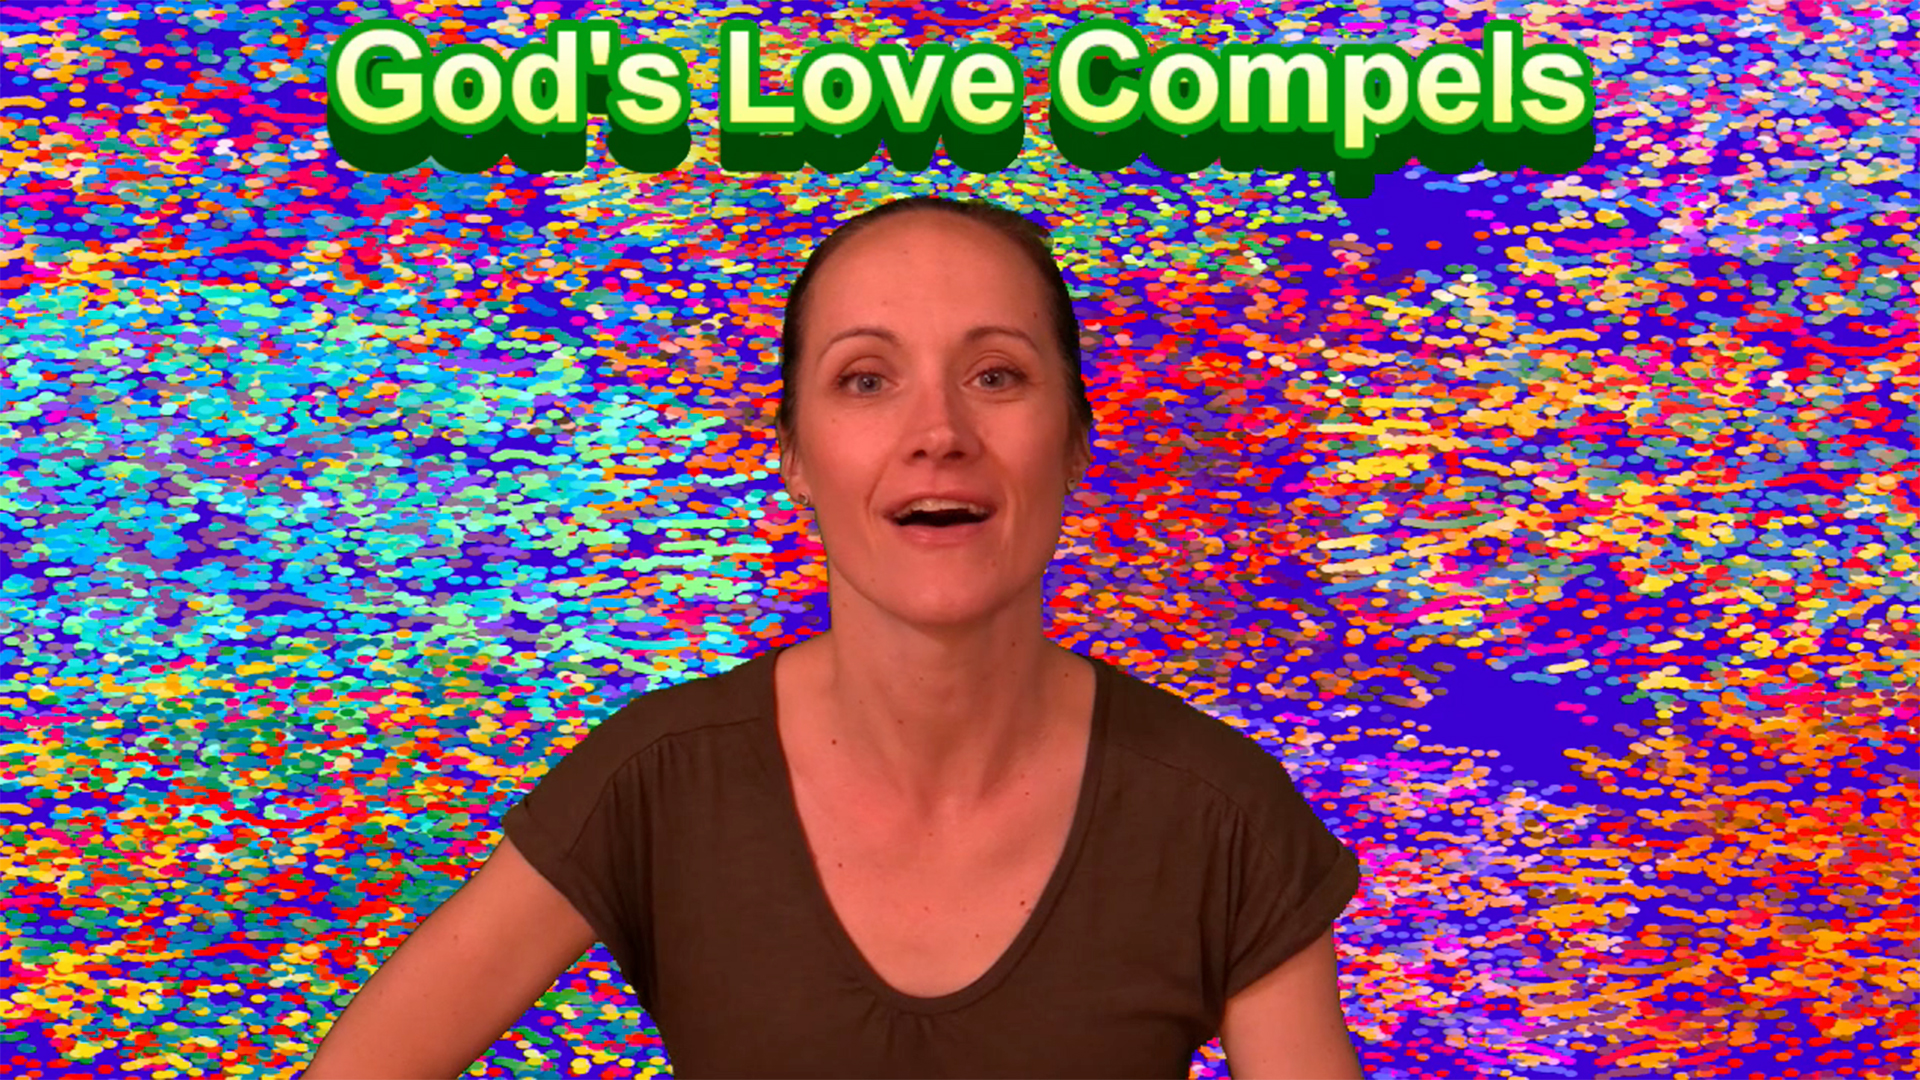 God's Love Compels Image